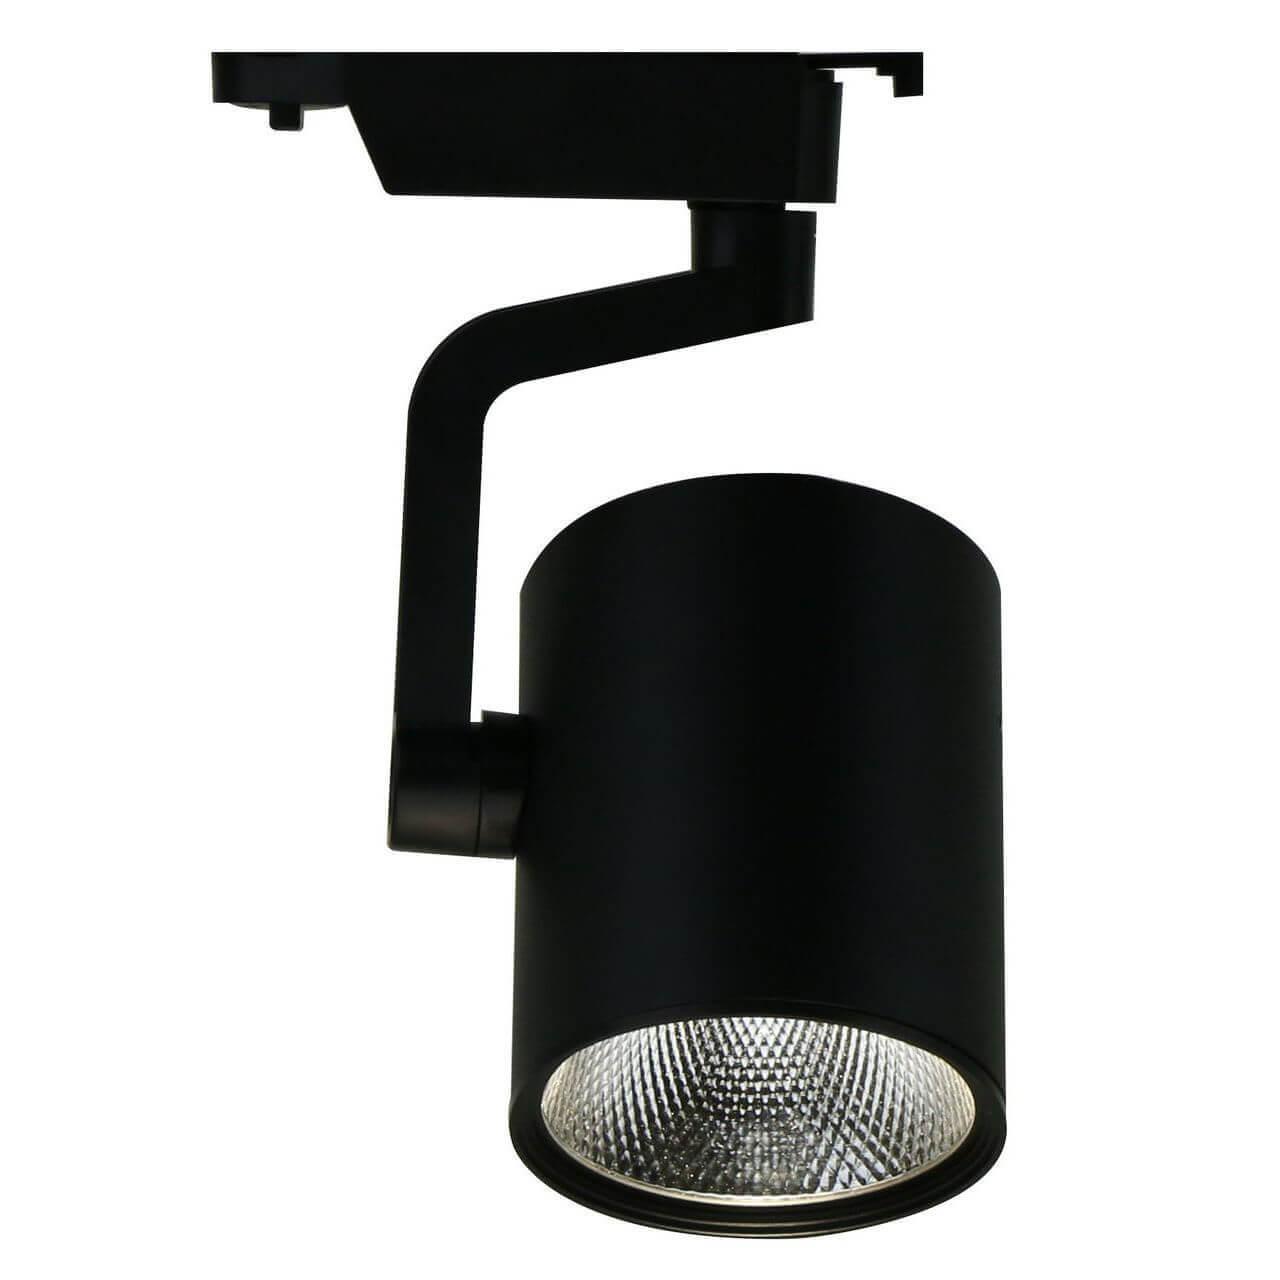 Трековый светильник Arte Lamp TRACCIA A2330PL-1BK контейнер с крышкой одноразовый для суши коррекс 24 4×19 3×5 3 см внутренние размеры 22×15 2×4 3 см 1 74 л чёрный